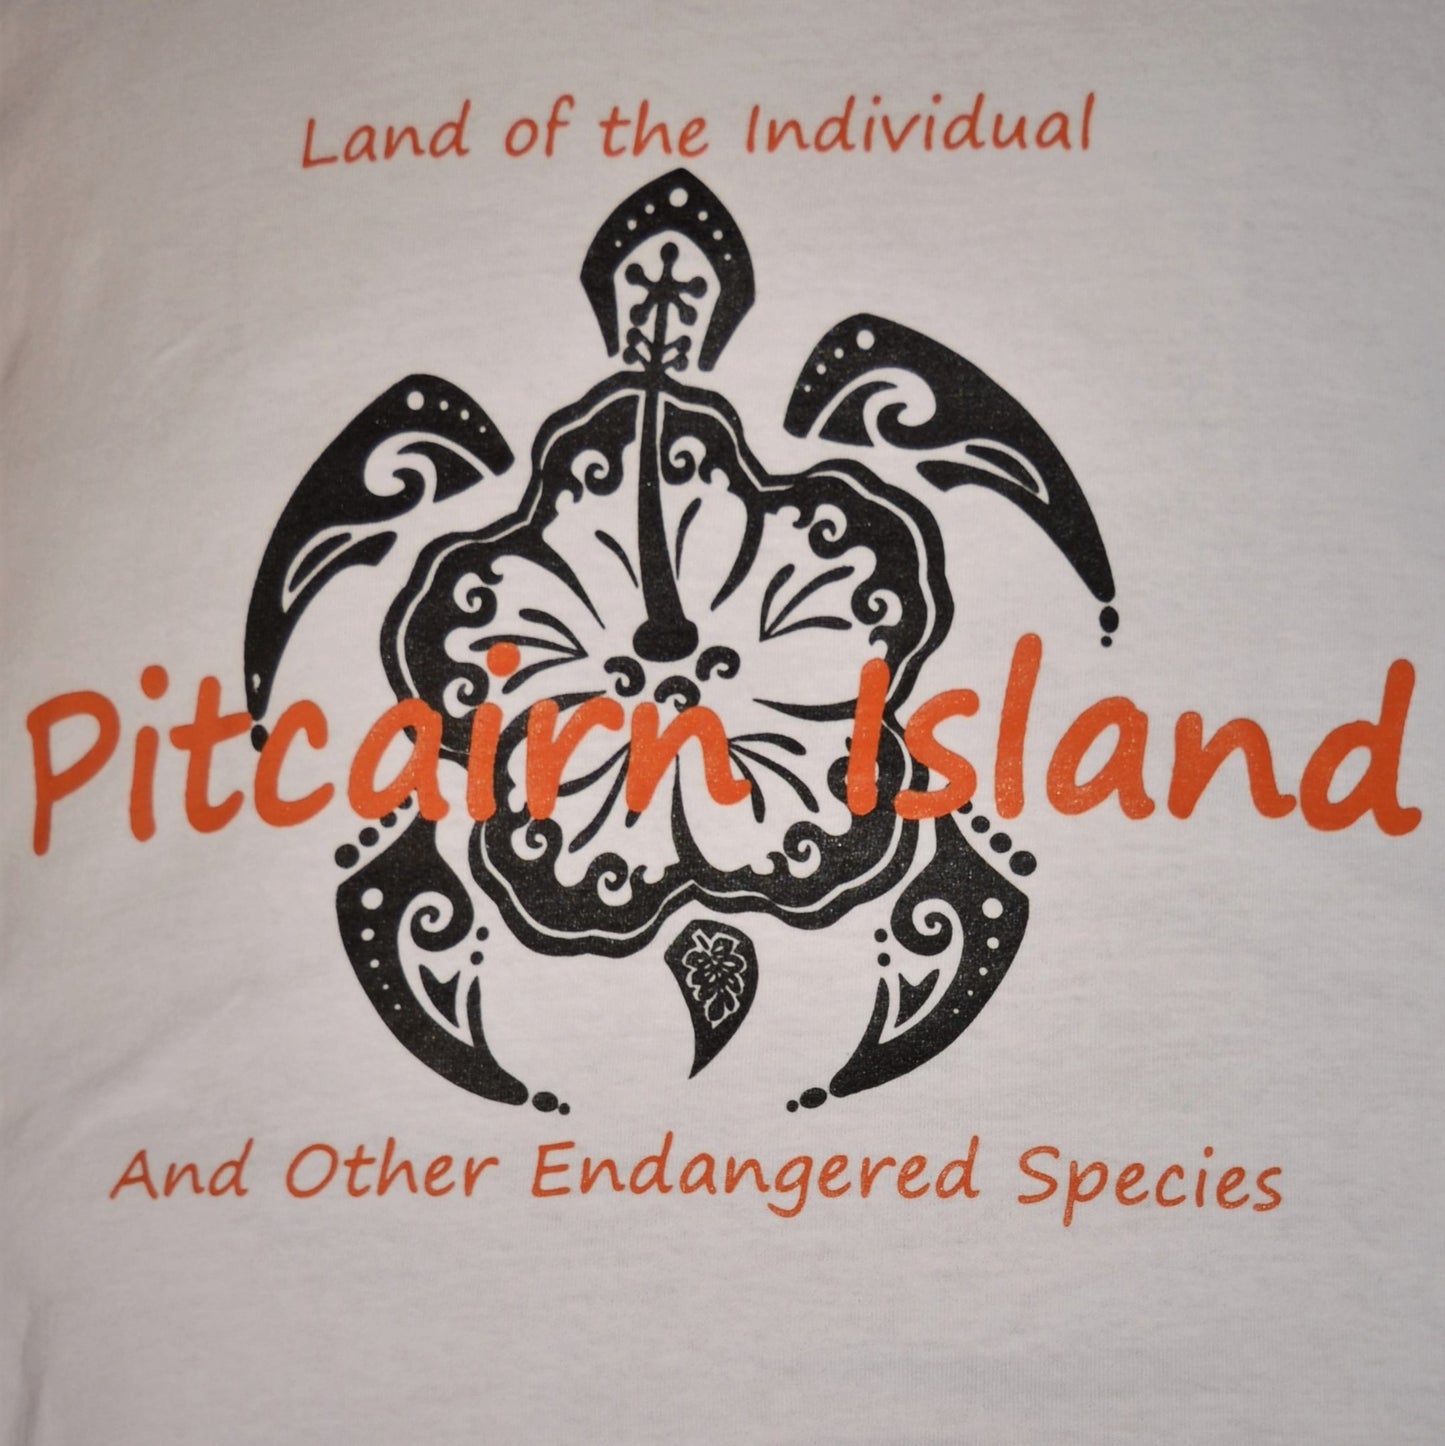 Pitcairn Island Tank - Terre de l'individu et tortue du Pacifique